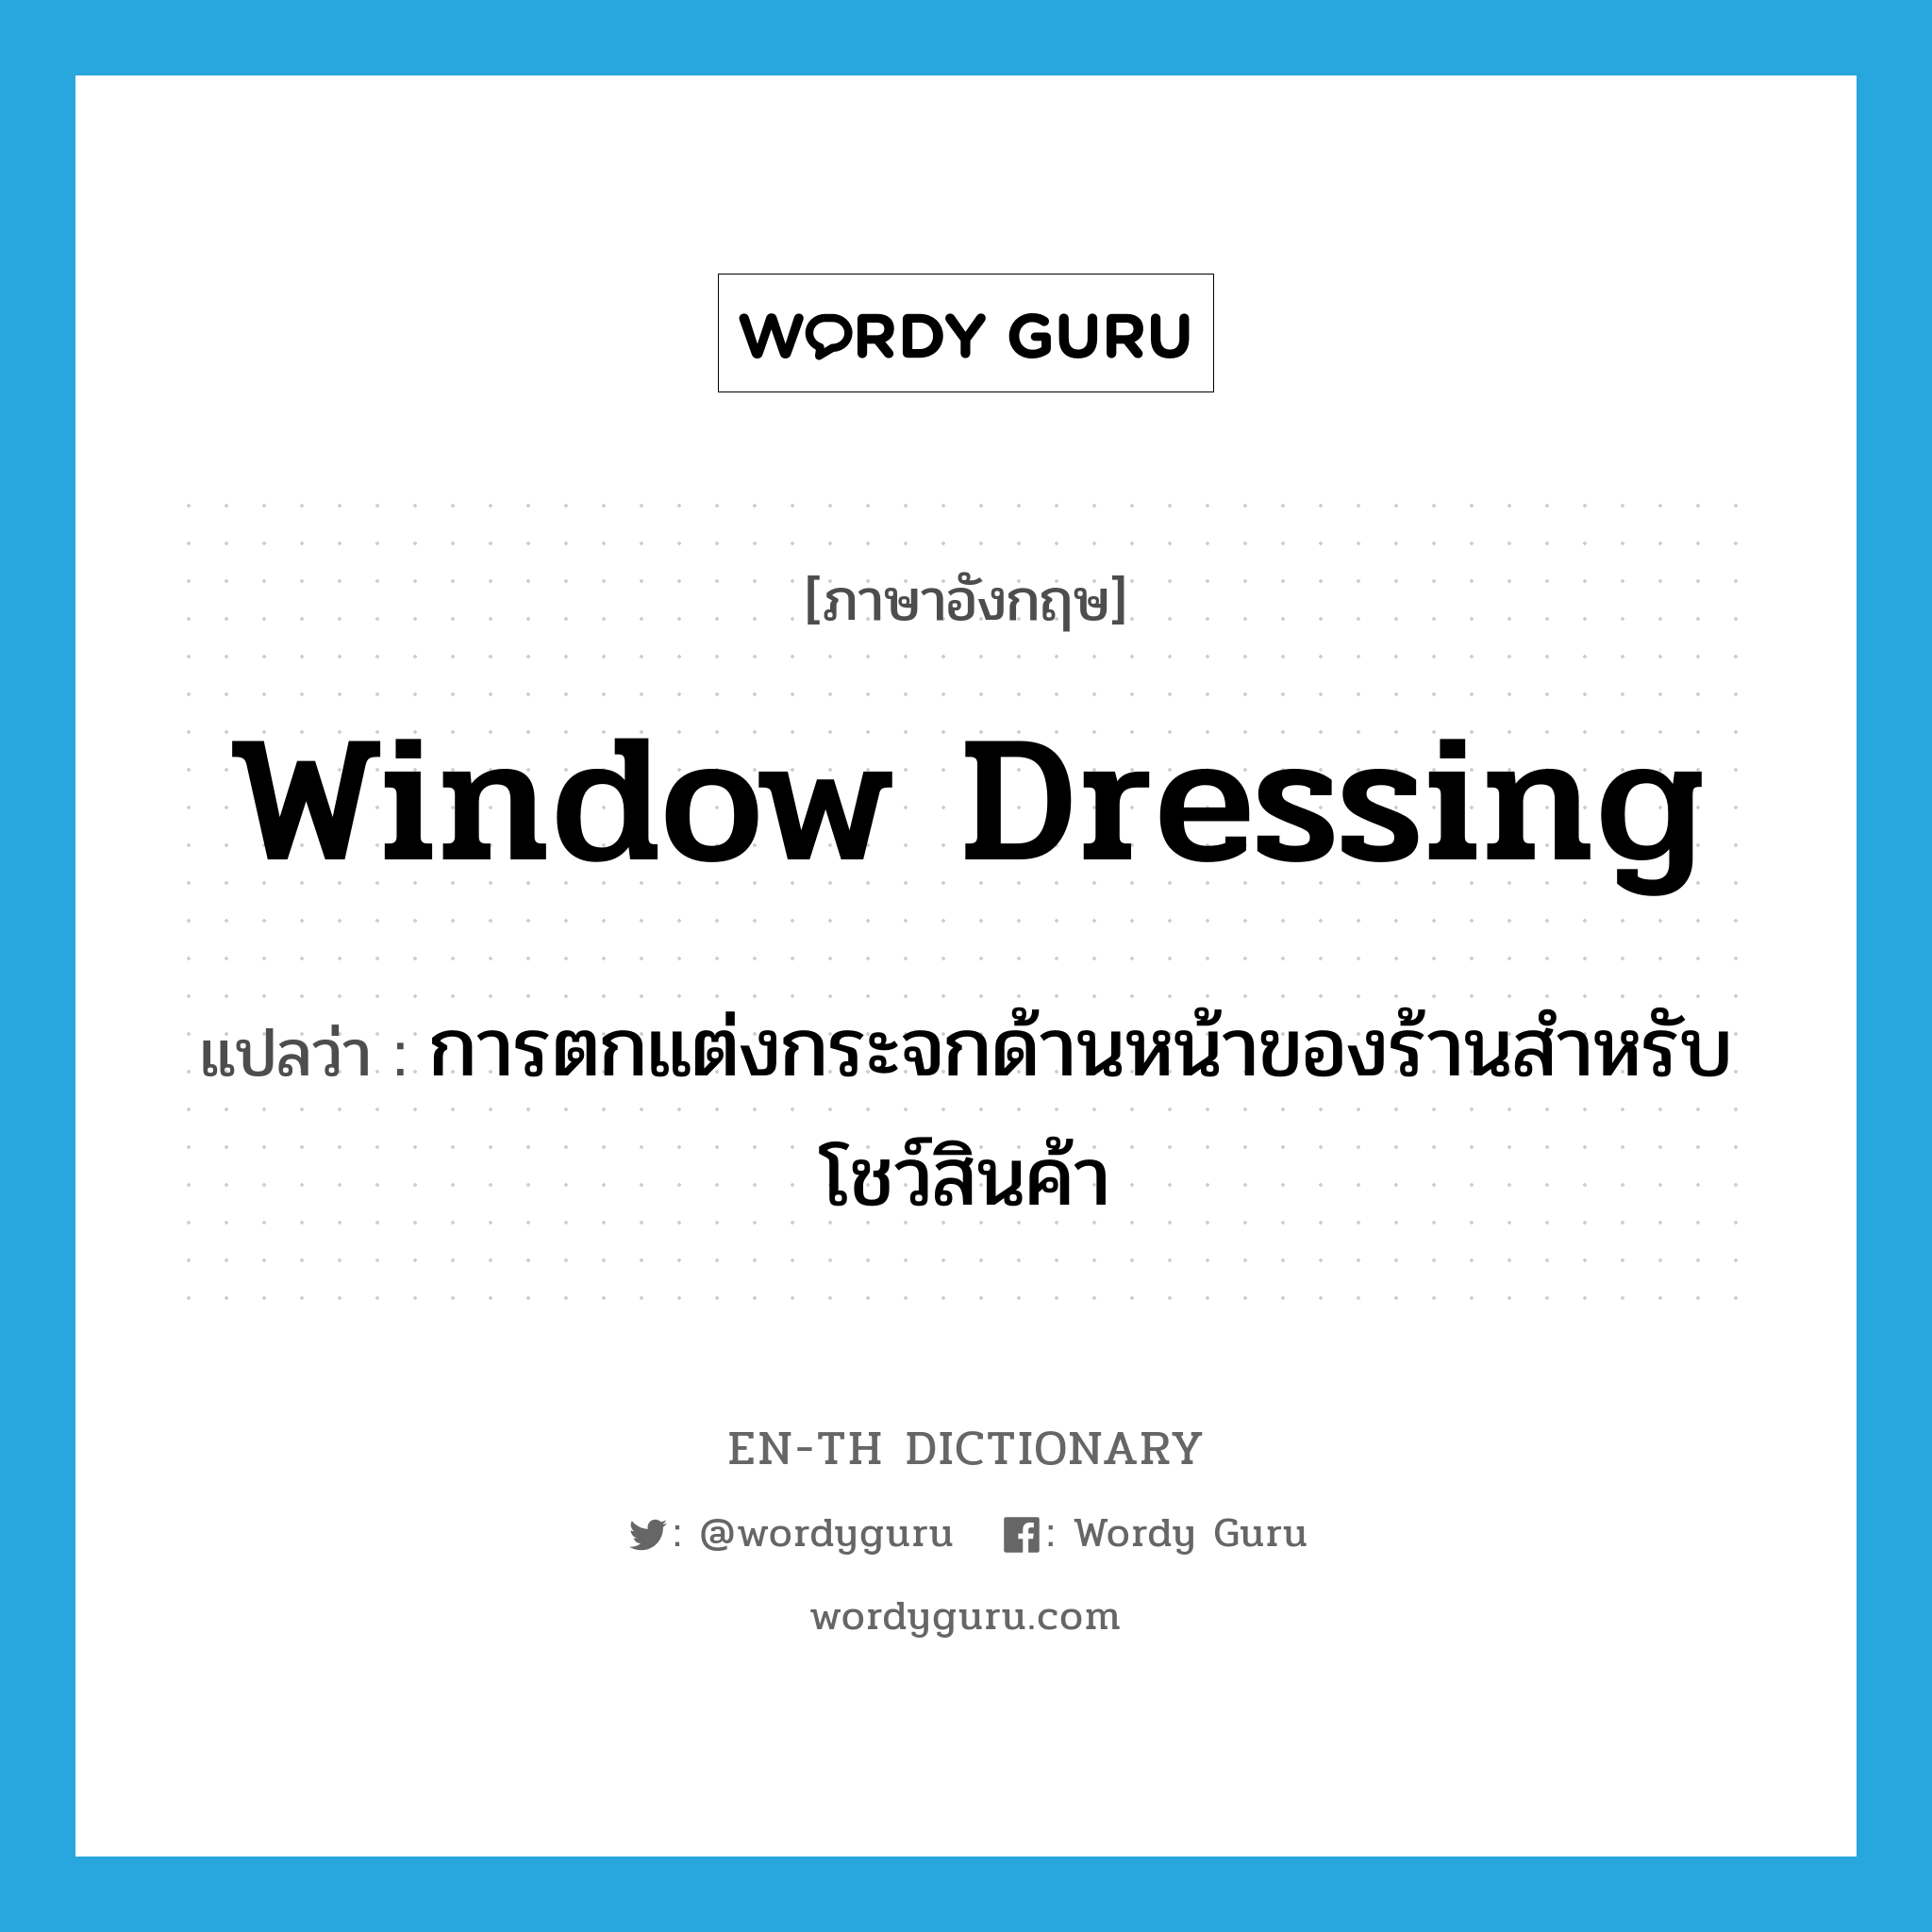 window dressing แปลว่า?, คำศัพท์ภาษาอังกฤษ window dressing แปลว่า การตกแต่งกระจกด้านหน้าของร้านสำหรับโชว์สินค้า ประเภท N หมวด N